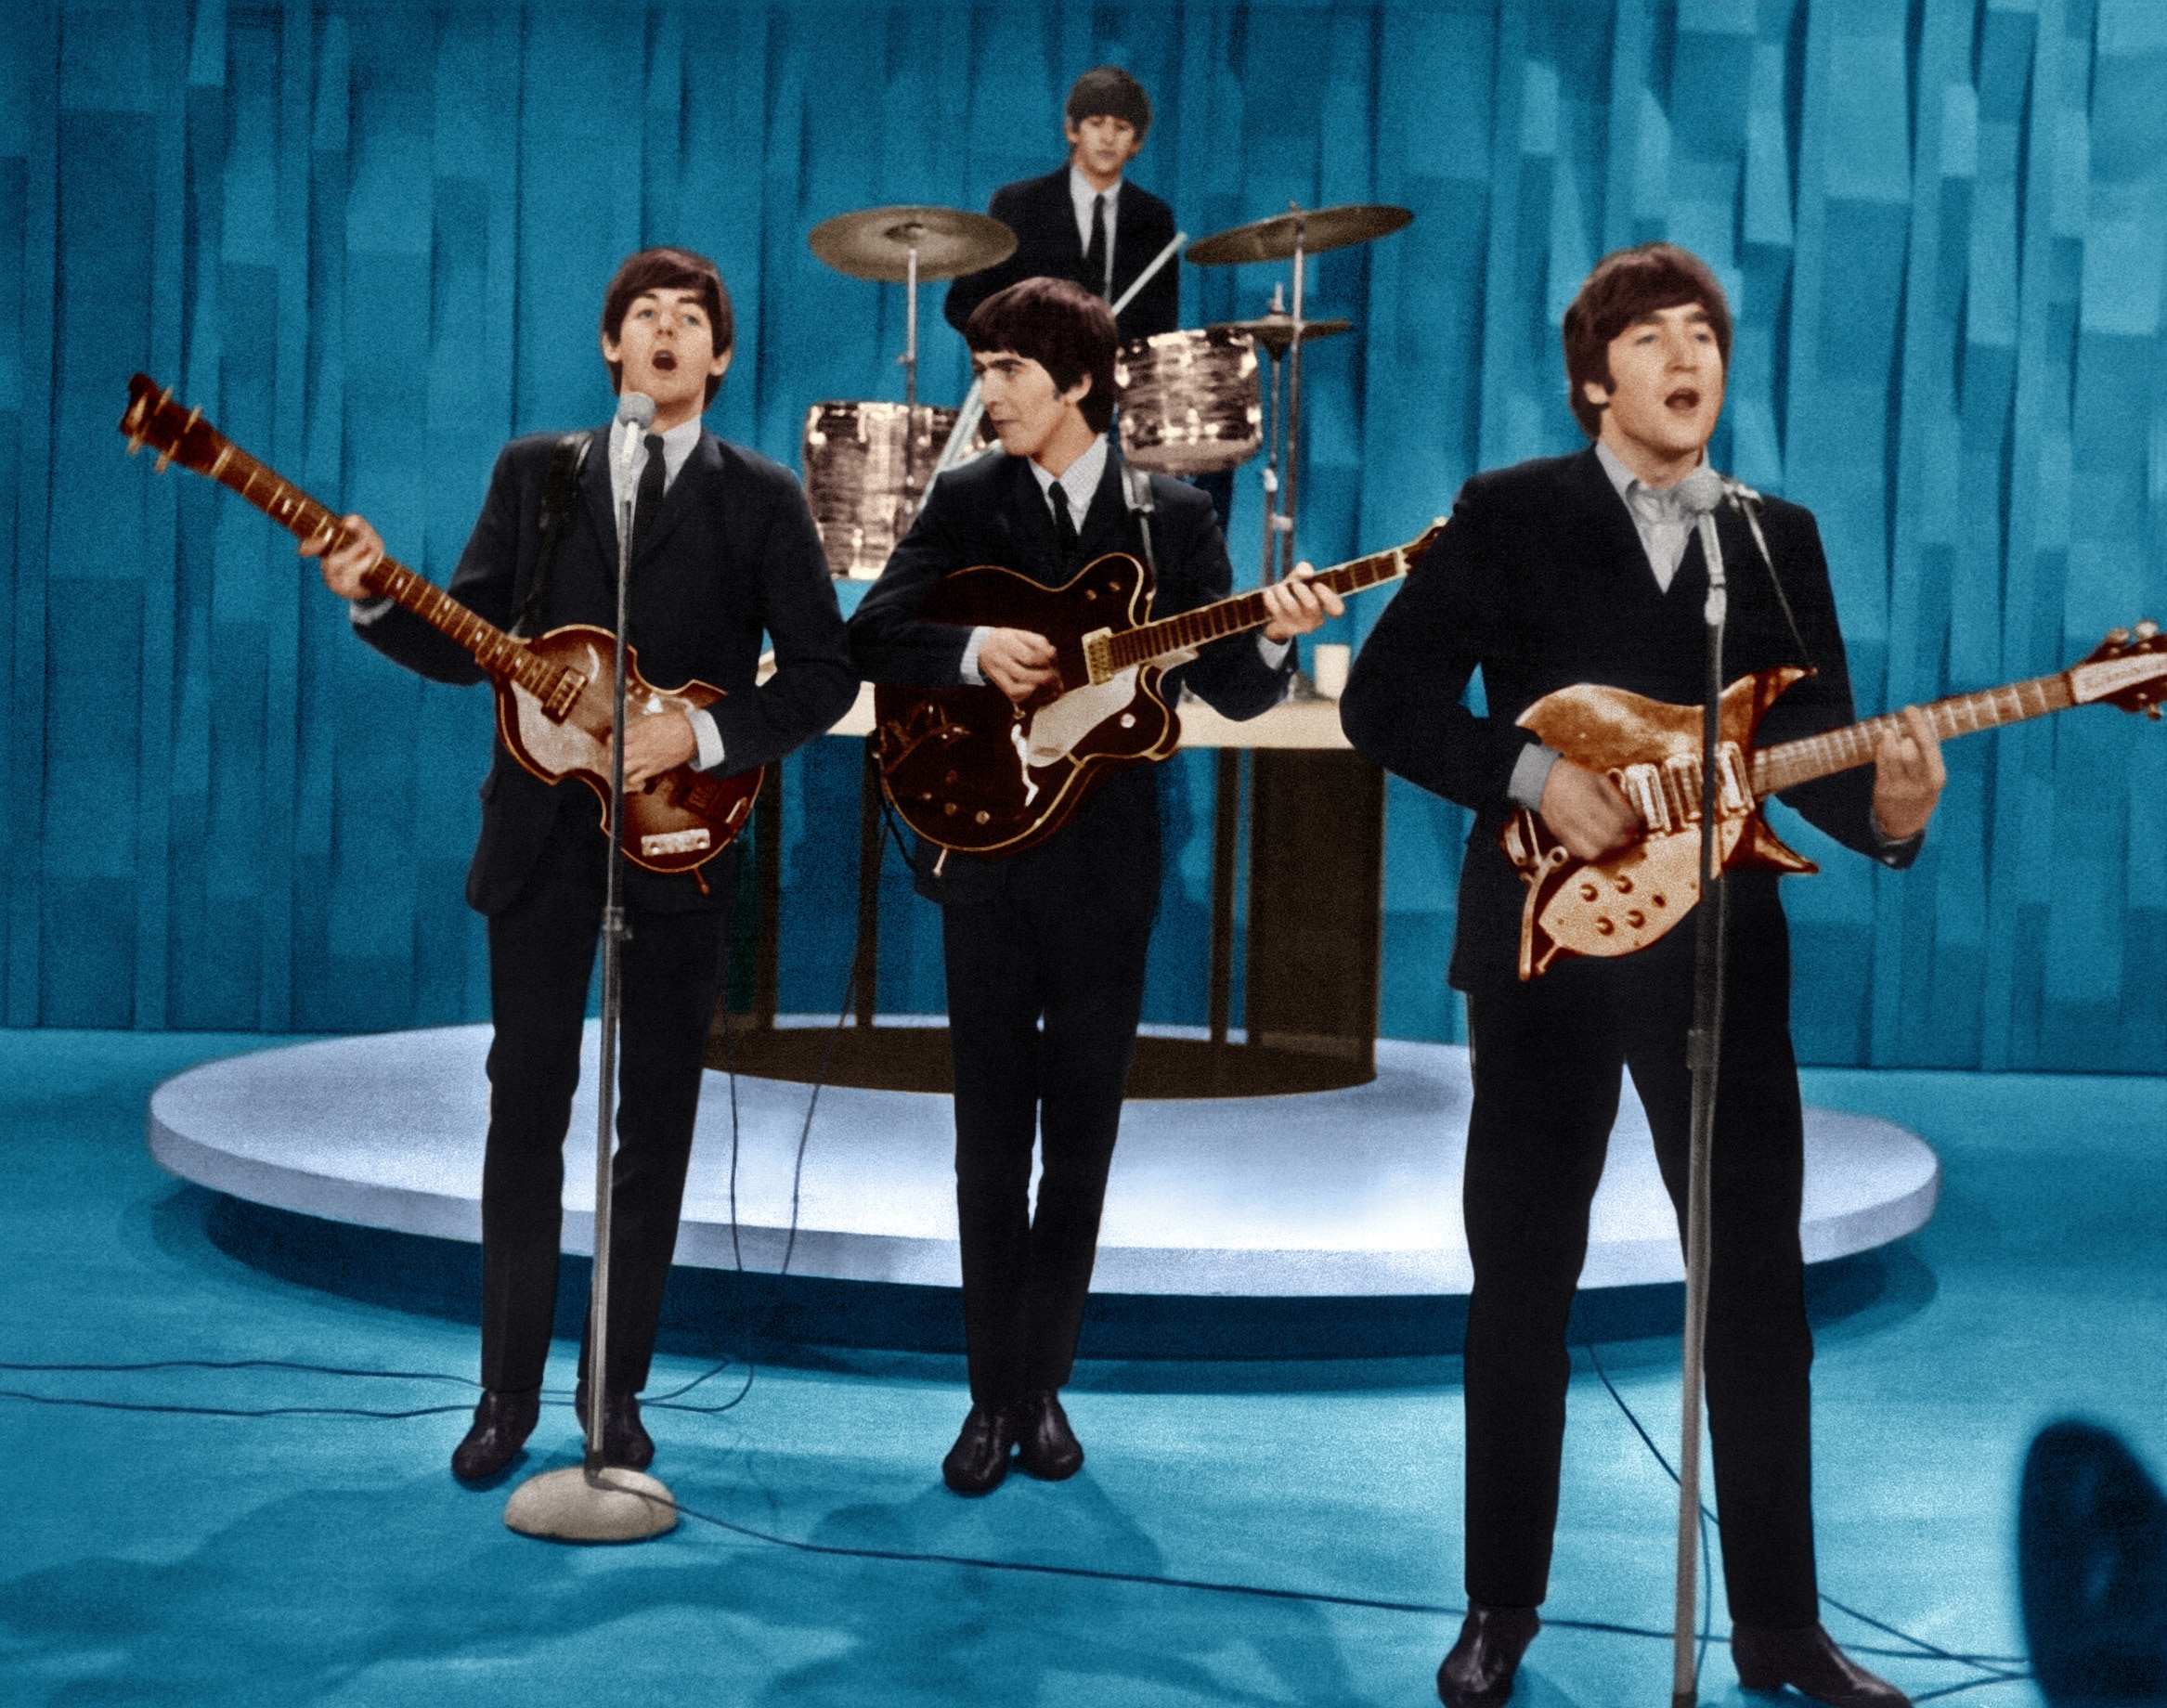 THE ED SULLIVAN SHOW, The Beatles (from left: Paul McCartney, Ringo Starr, George Harrison, John Lennon) in dress rehearsal